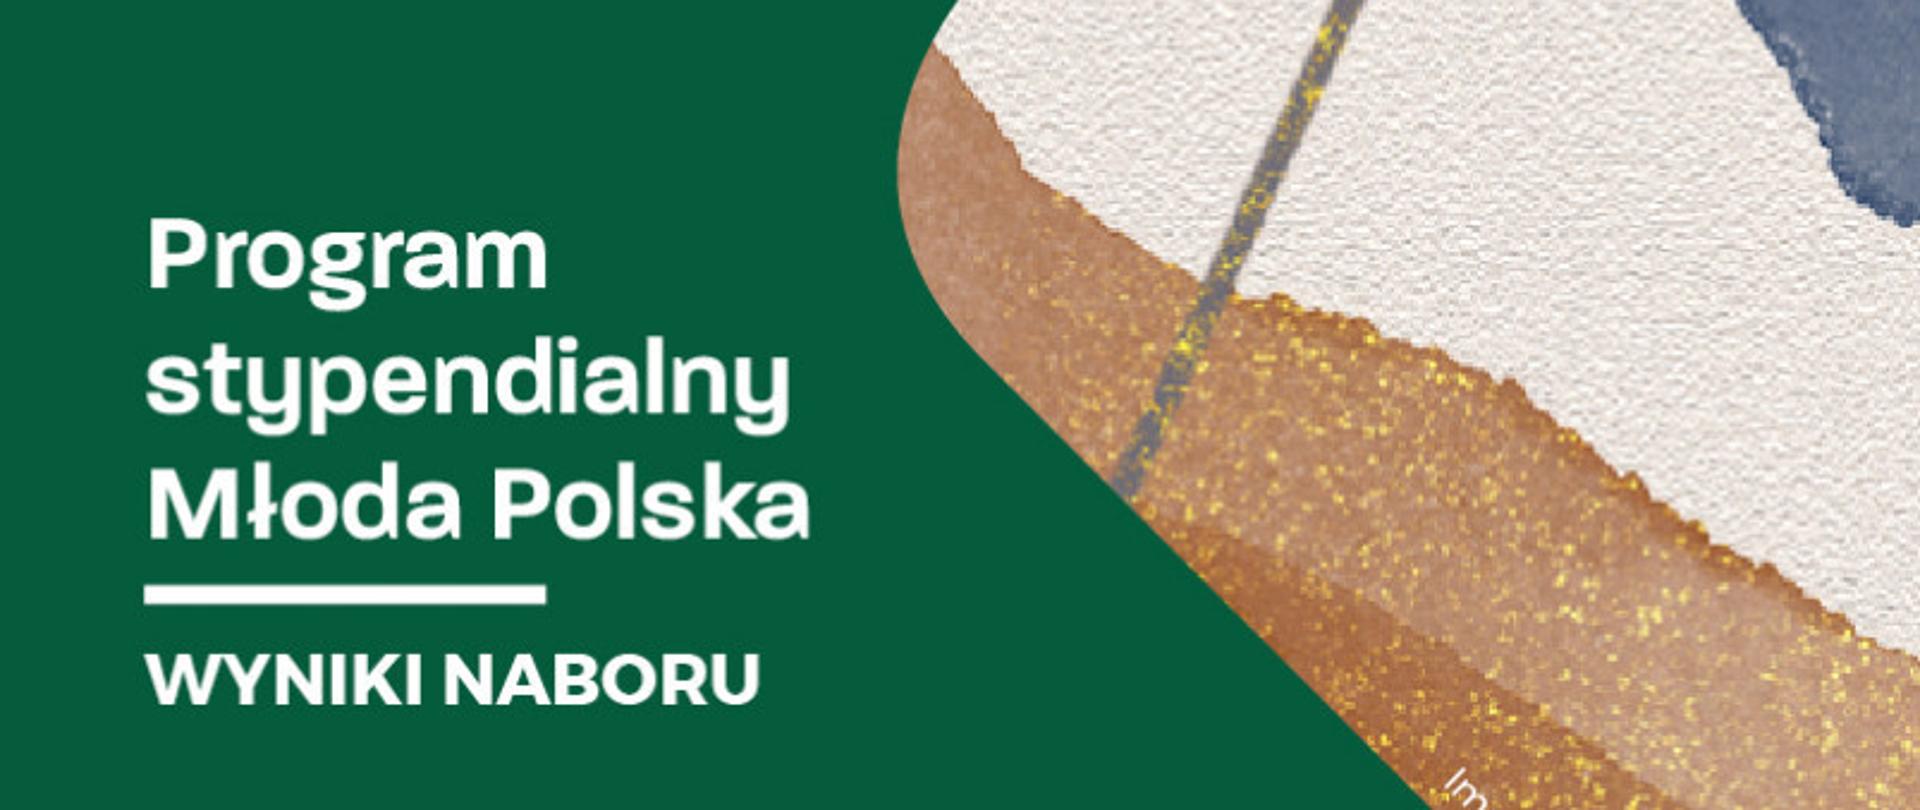 Baner z napisem o wynikach naboru Programu Stypendialnego Młoda Polska 2023, białe litery na zielonym tle, grafika z rysunkiem abstrakcyjnym w kolorach brązowo-żółto-beżowych. 